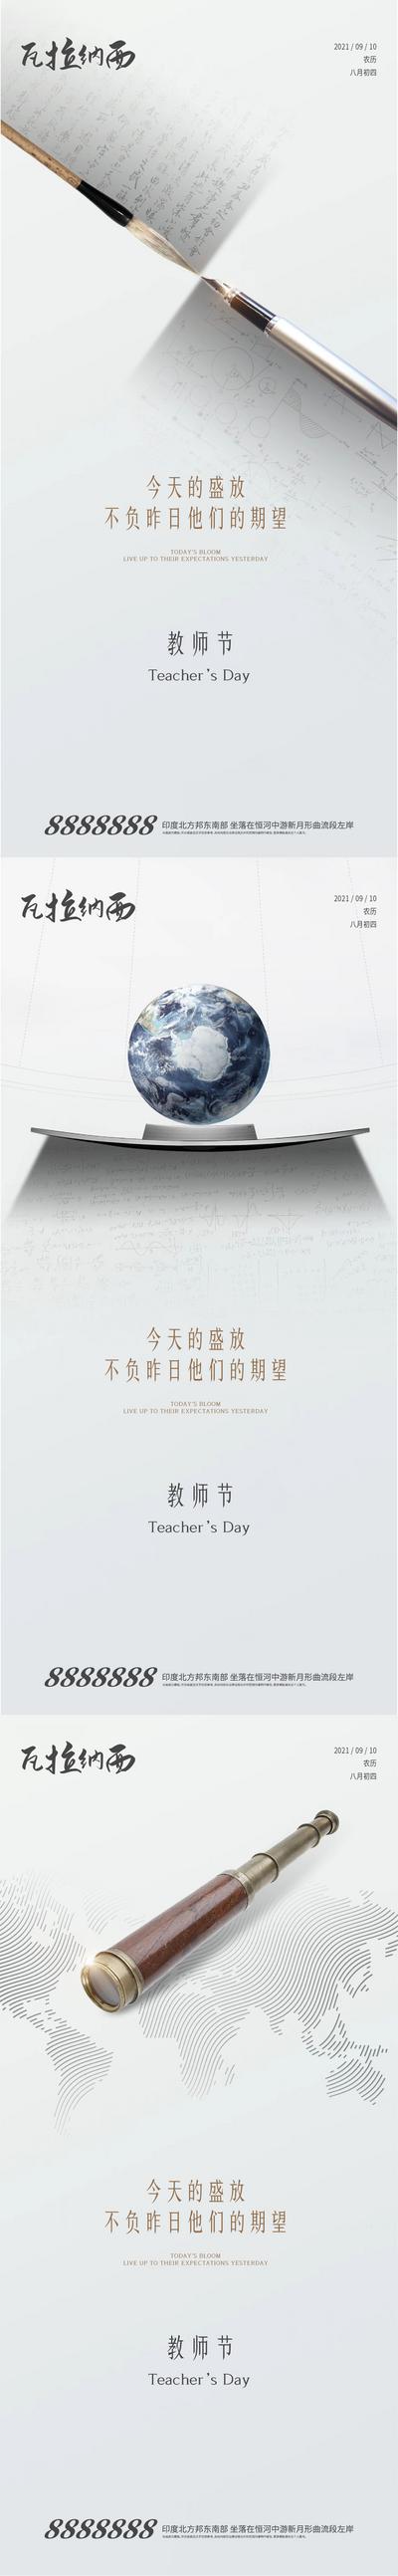 【南门网】海报 房地产 教师节 公历节日 放大镜 地图 地球